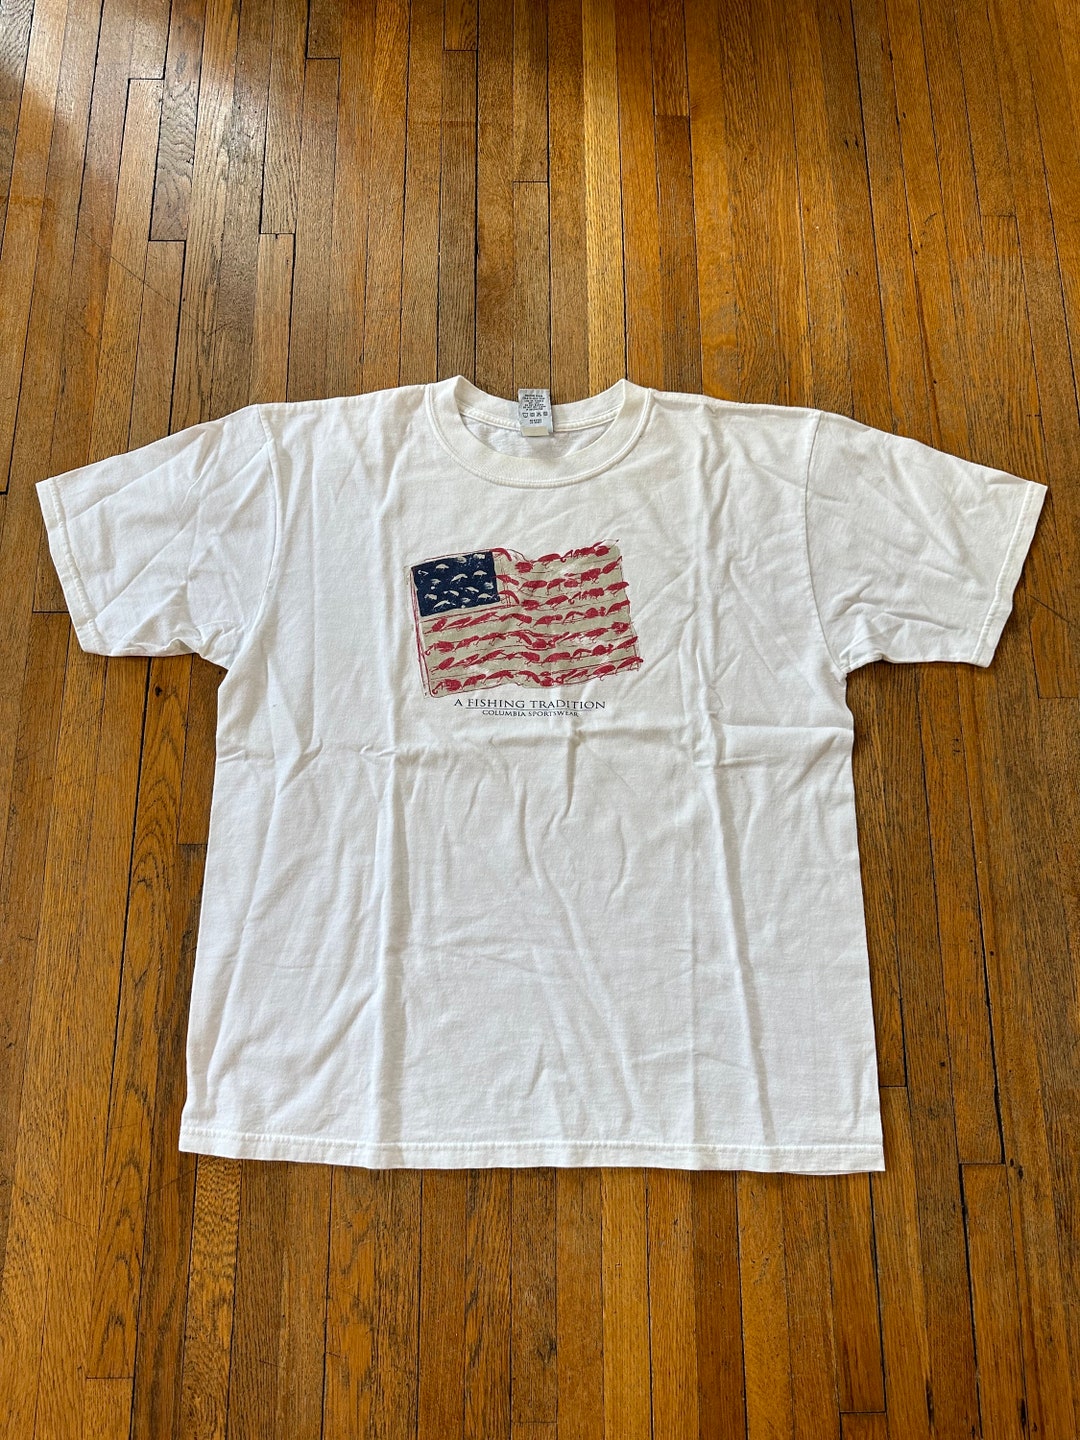 XL 90's Columbia Fishing Tshirt USA American Flag 